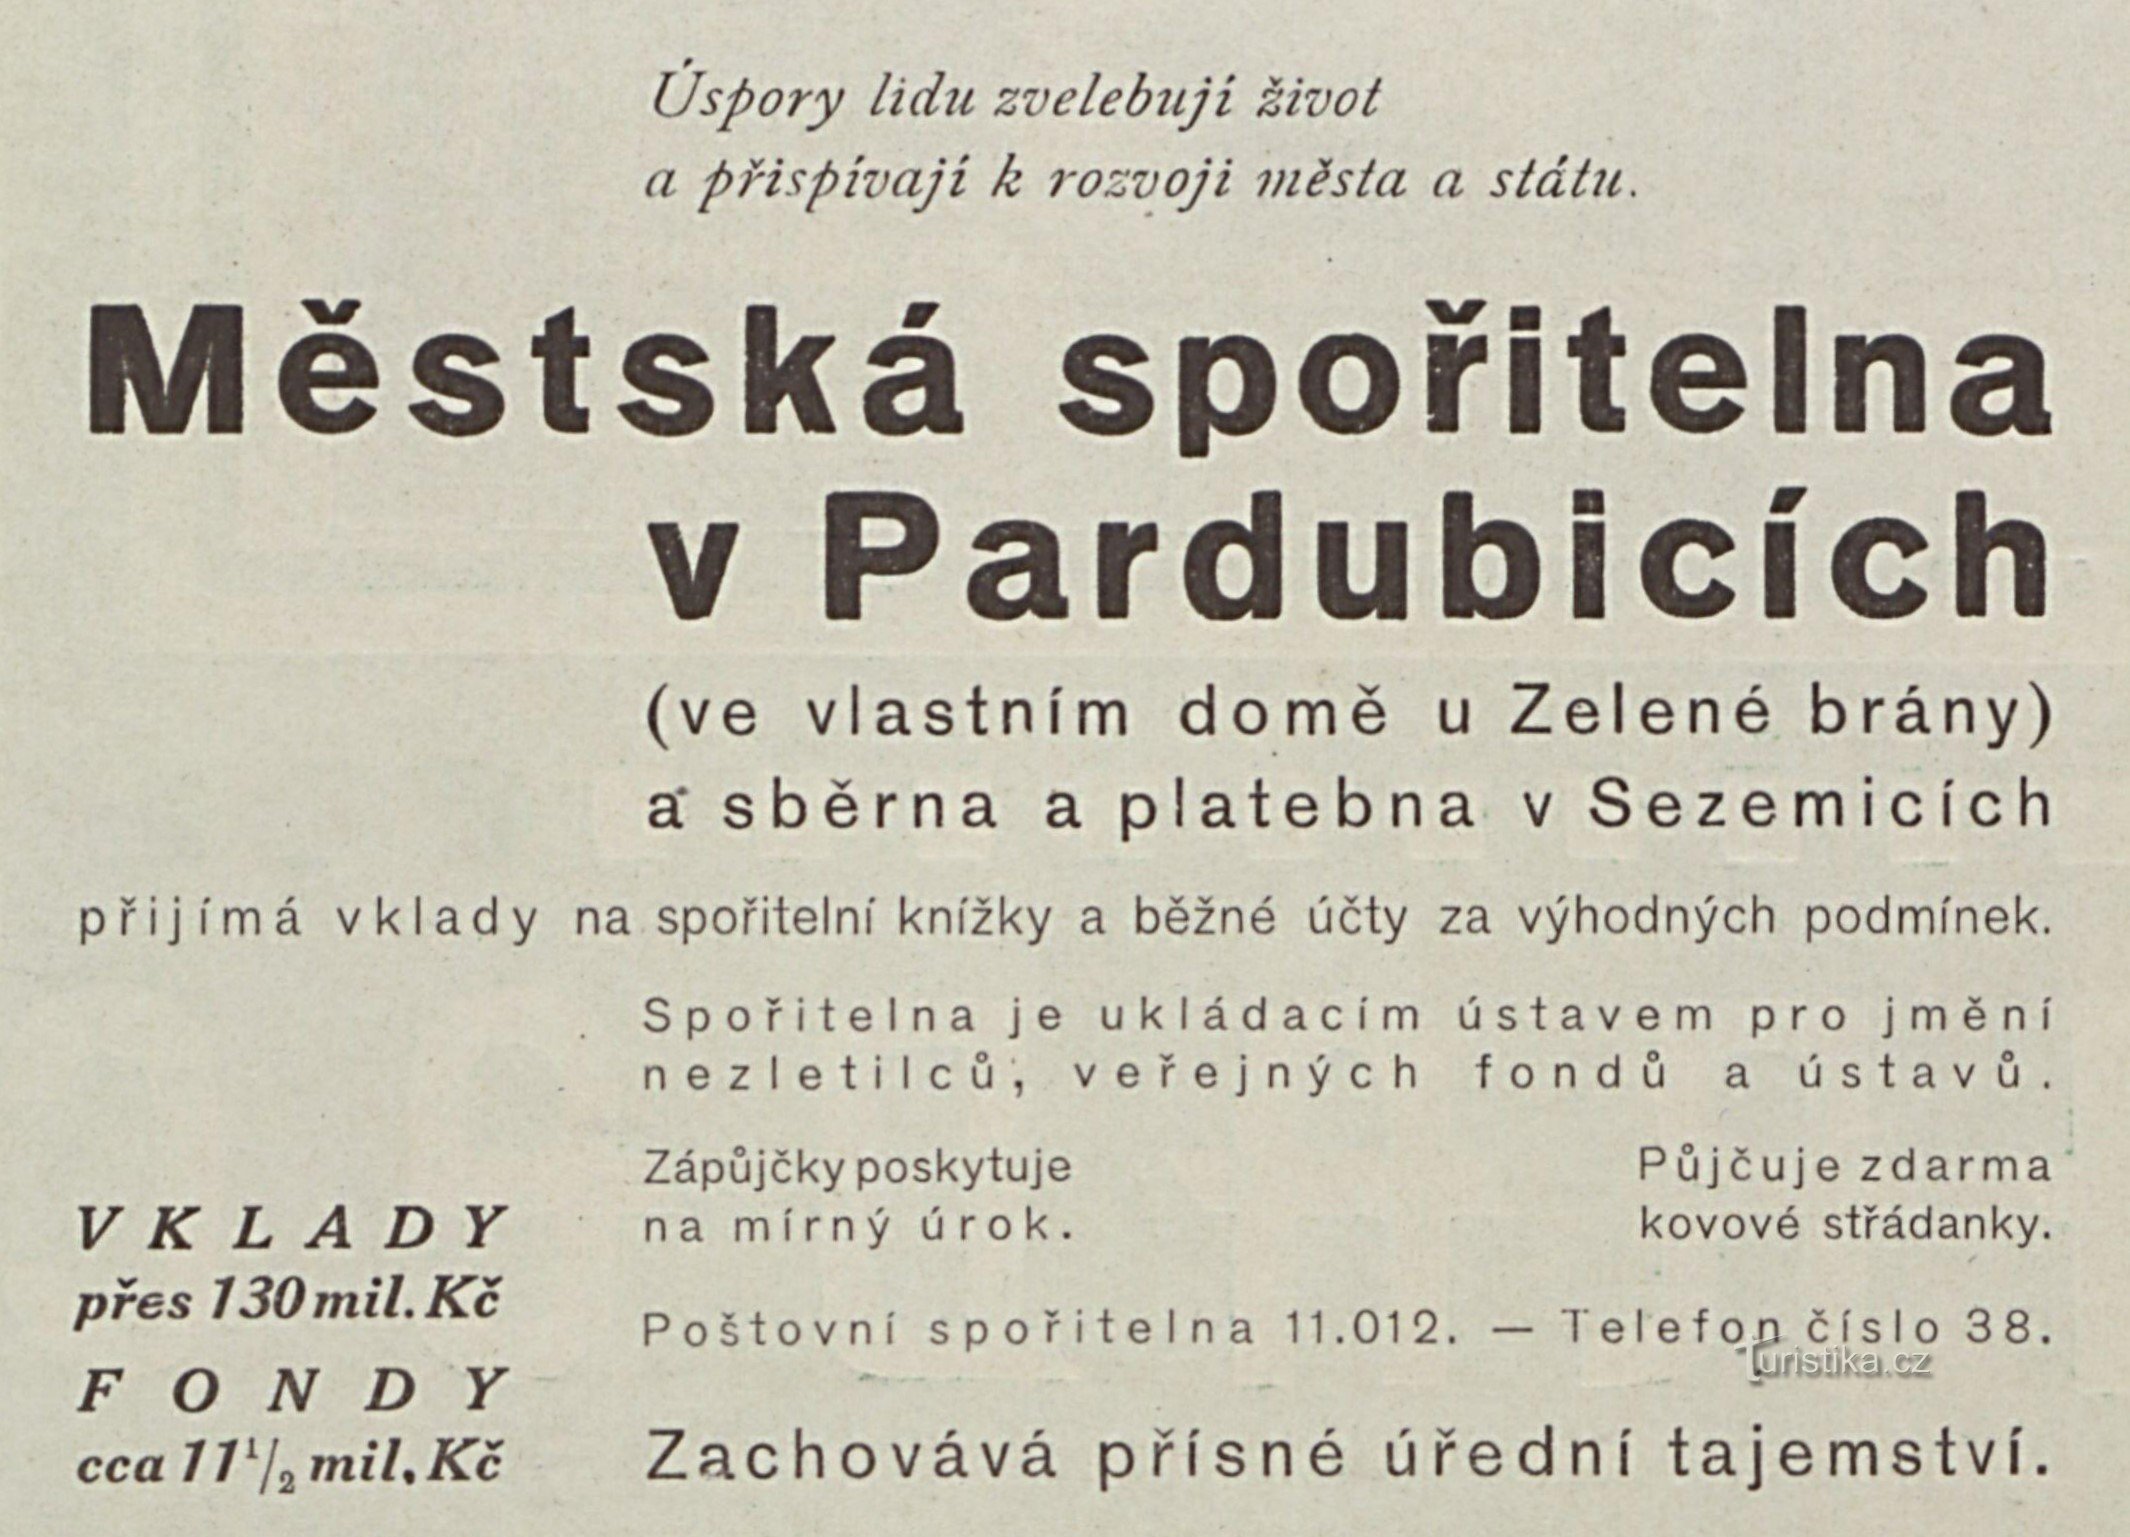 Pubblicità della Cassa di Risparmio Municipale di Pardubice degli anni '20